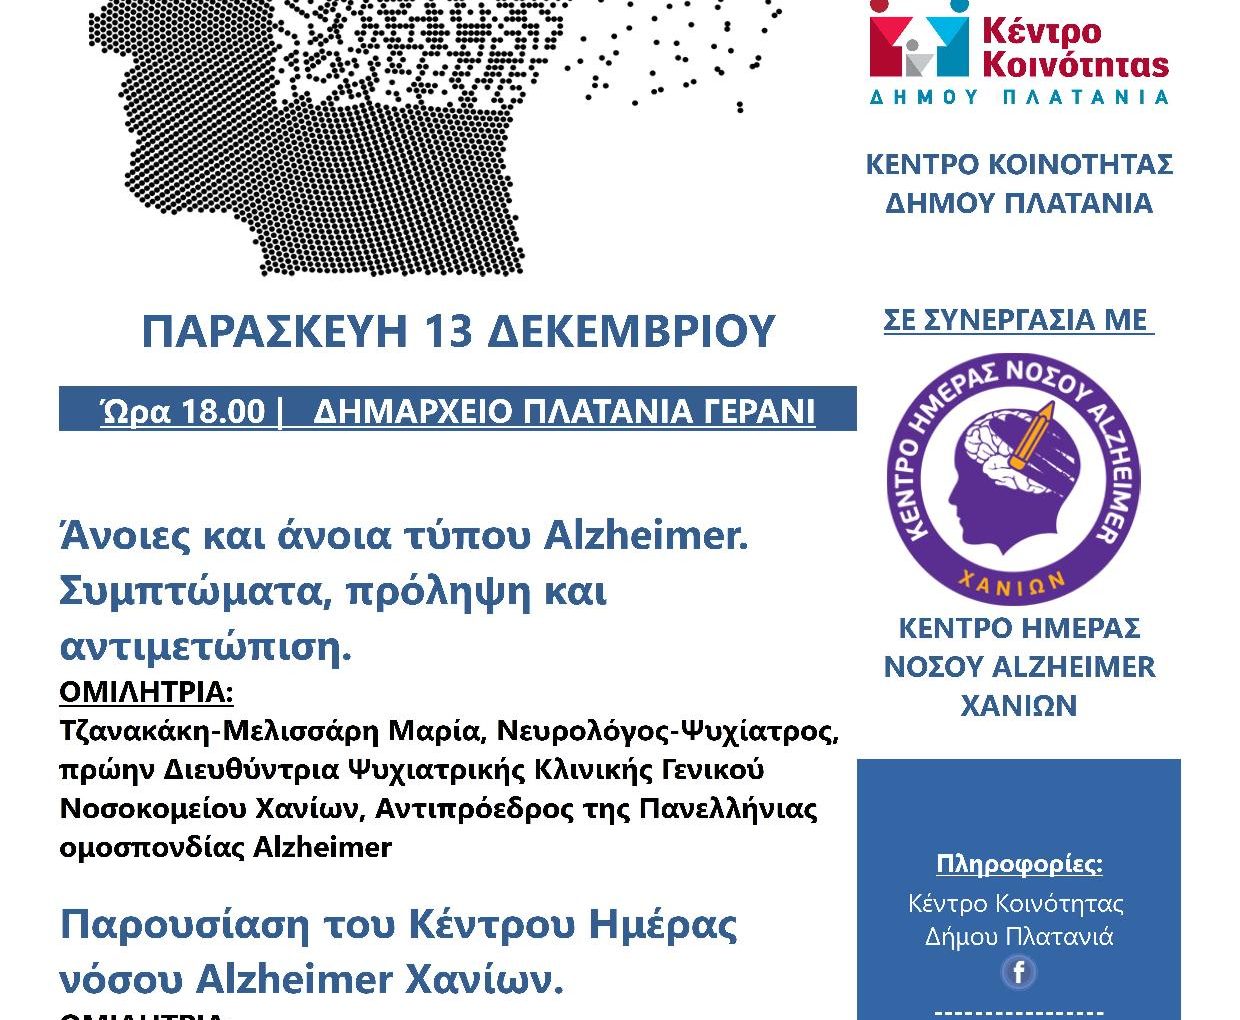 Ομιλία στο Δήμο Πλατανιά για τις άνοιες και την άνοια τύπου Alzheimer σε συνεργασία με το Κέντρο Ημέρας Νόσου Alzheimer Χανίων